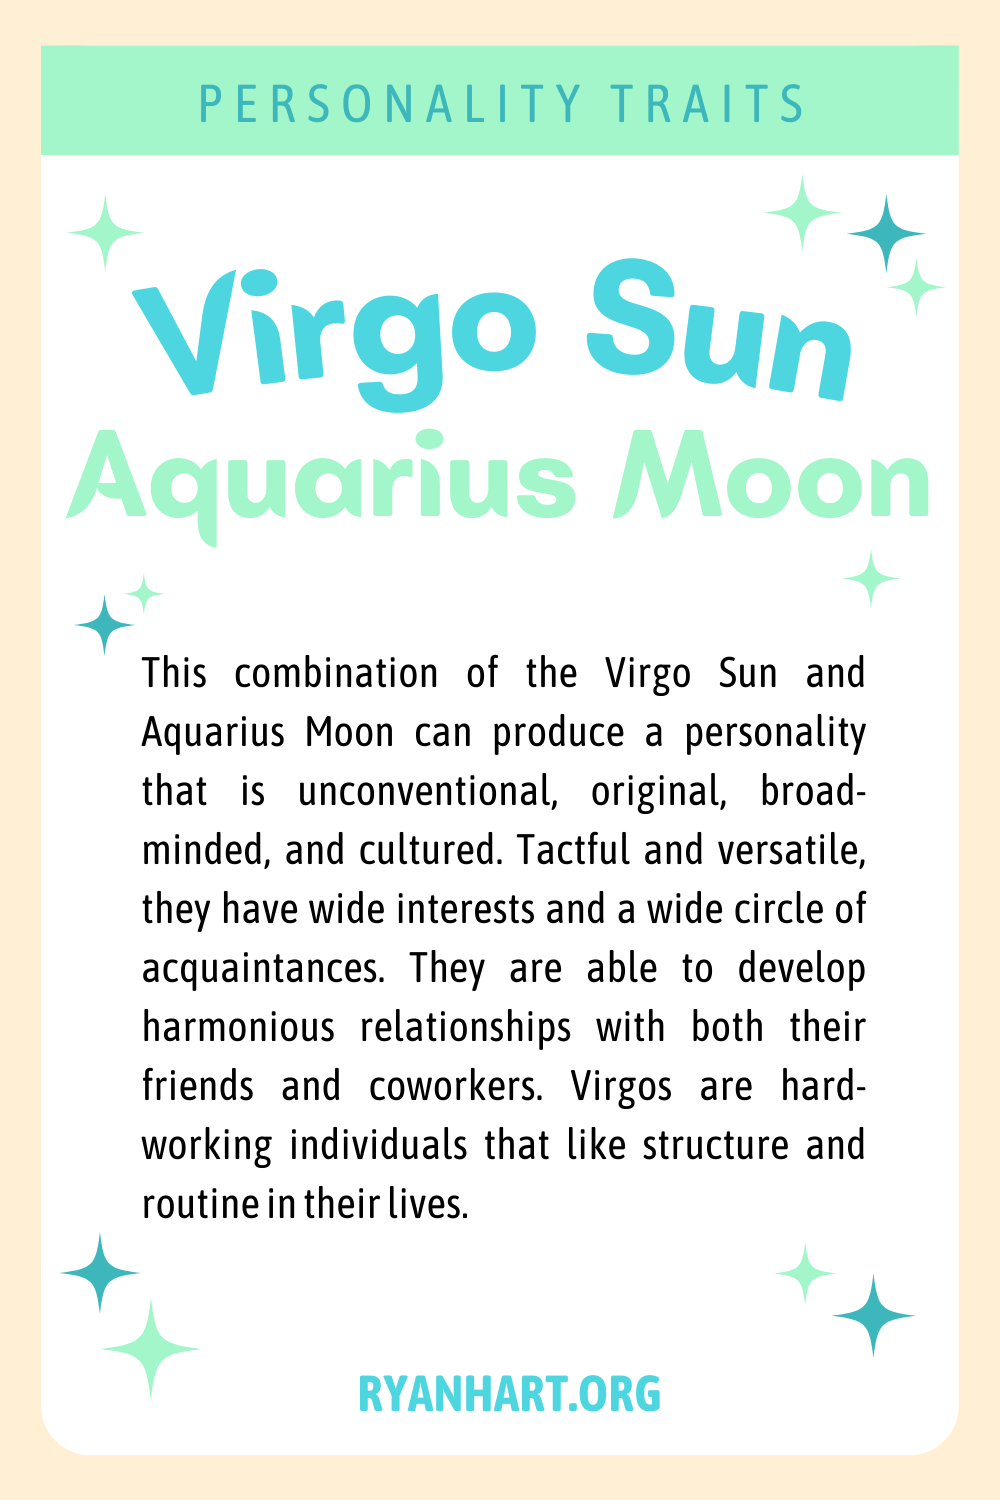  Panna Słońce Wodnik Księżyc Cechy osobowości